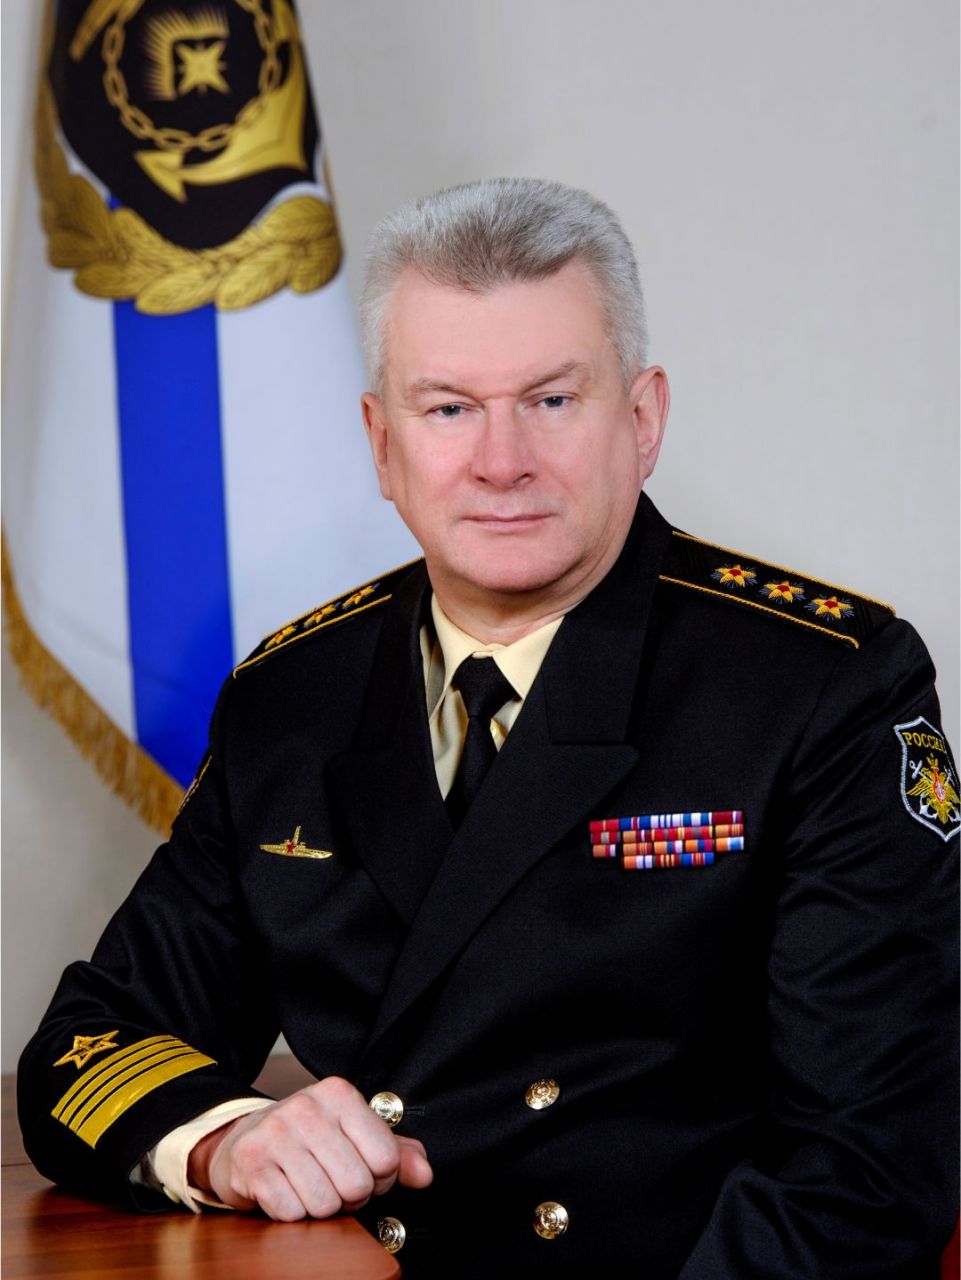 车臣领袖扎卡耶夫多大图片